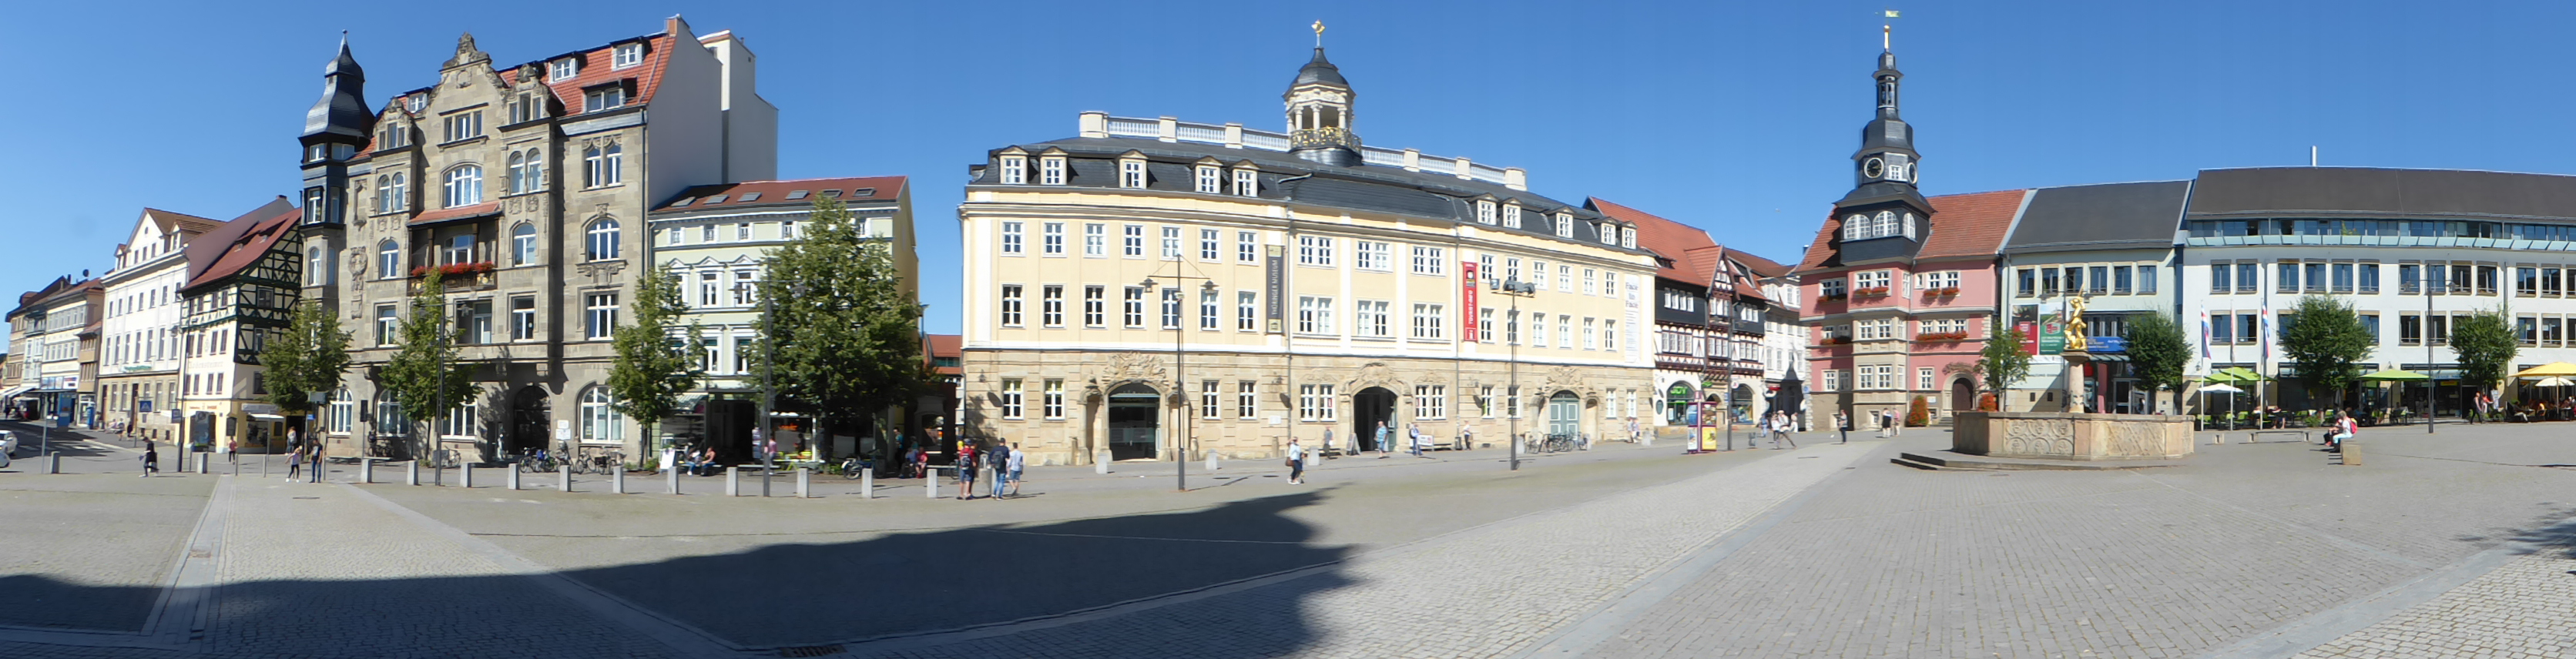 Der Markt von Eisenach